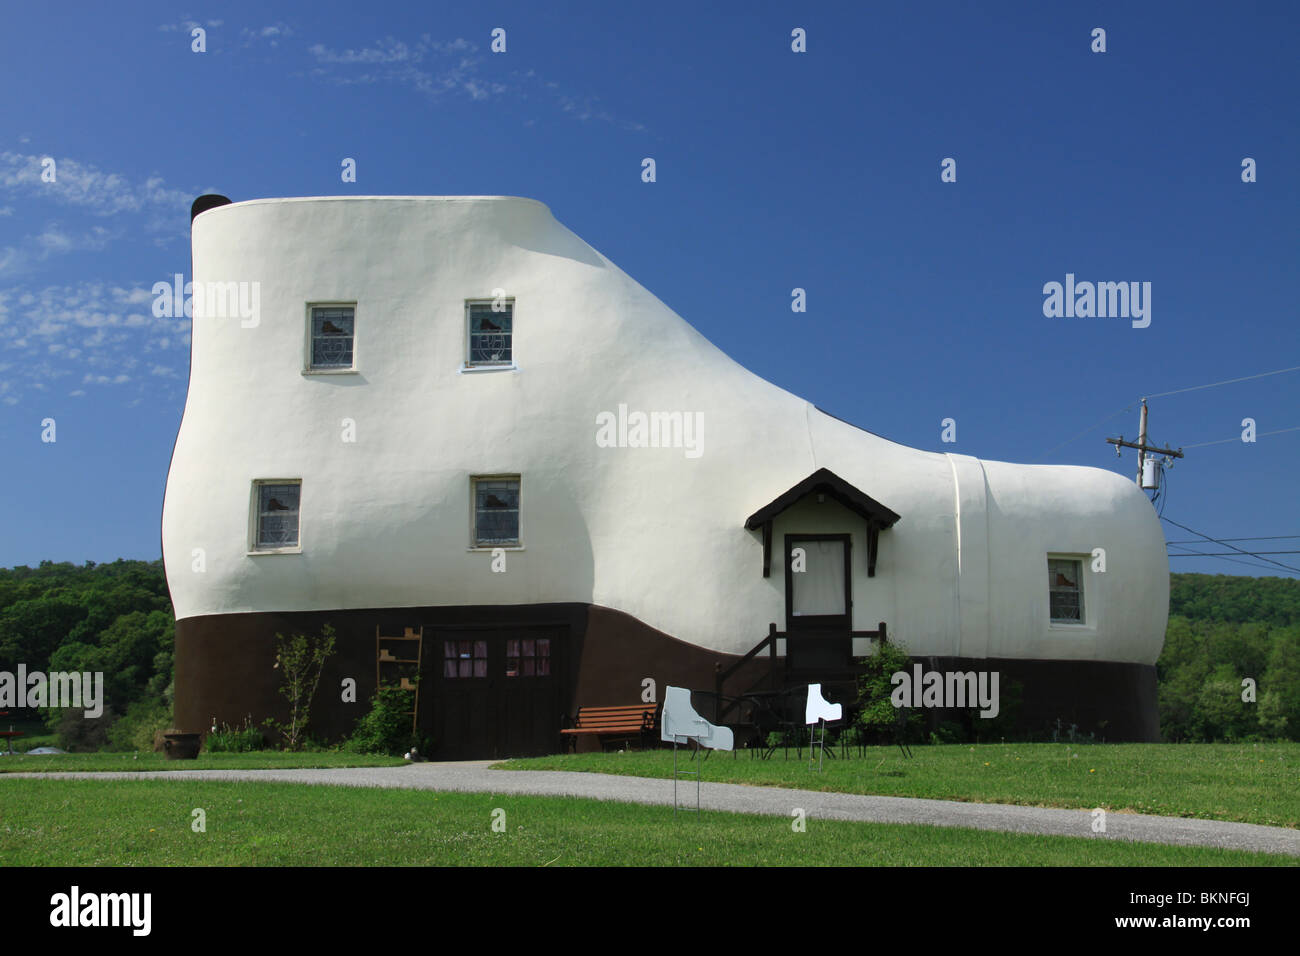 Casa de fotografías e de alta resolución - Alamy